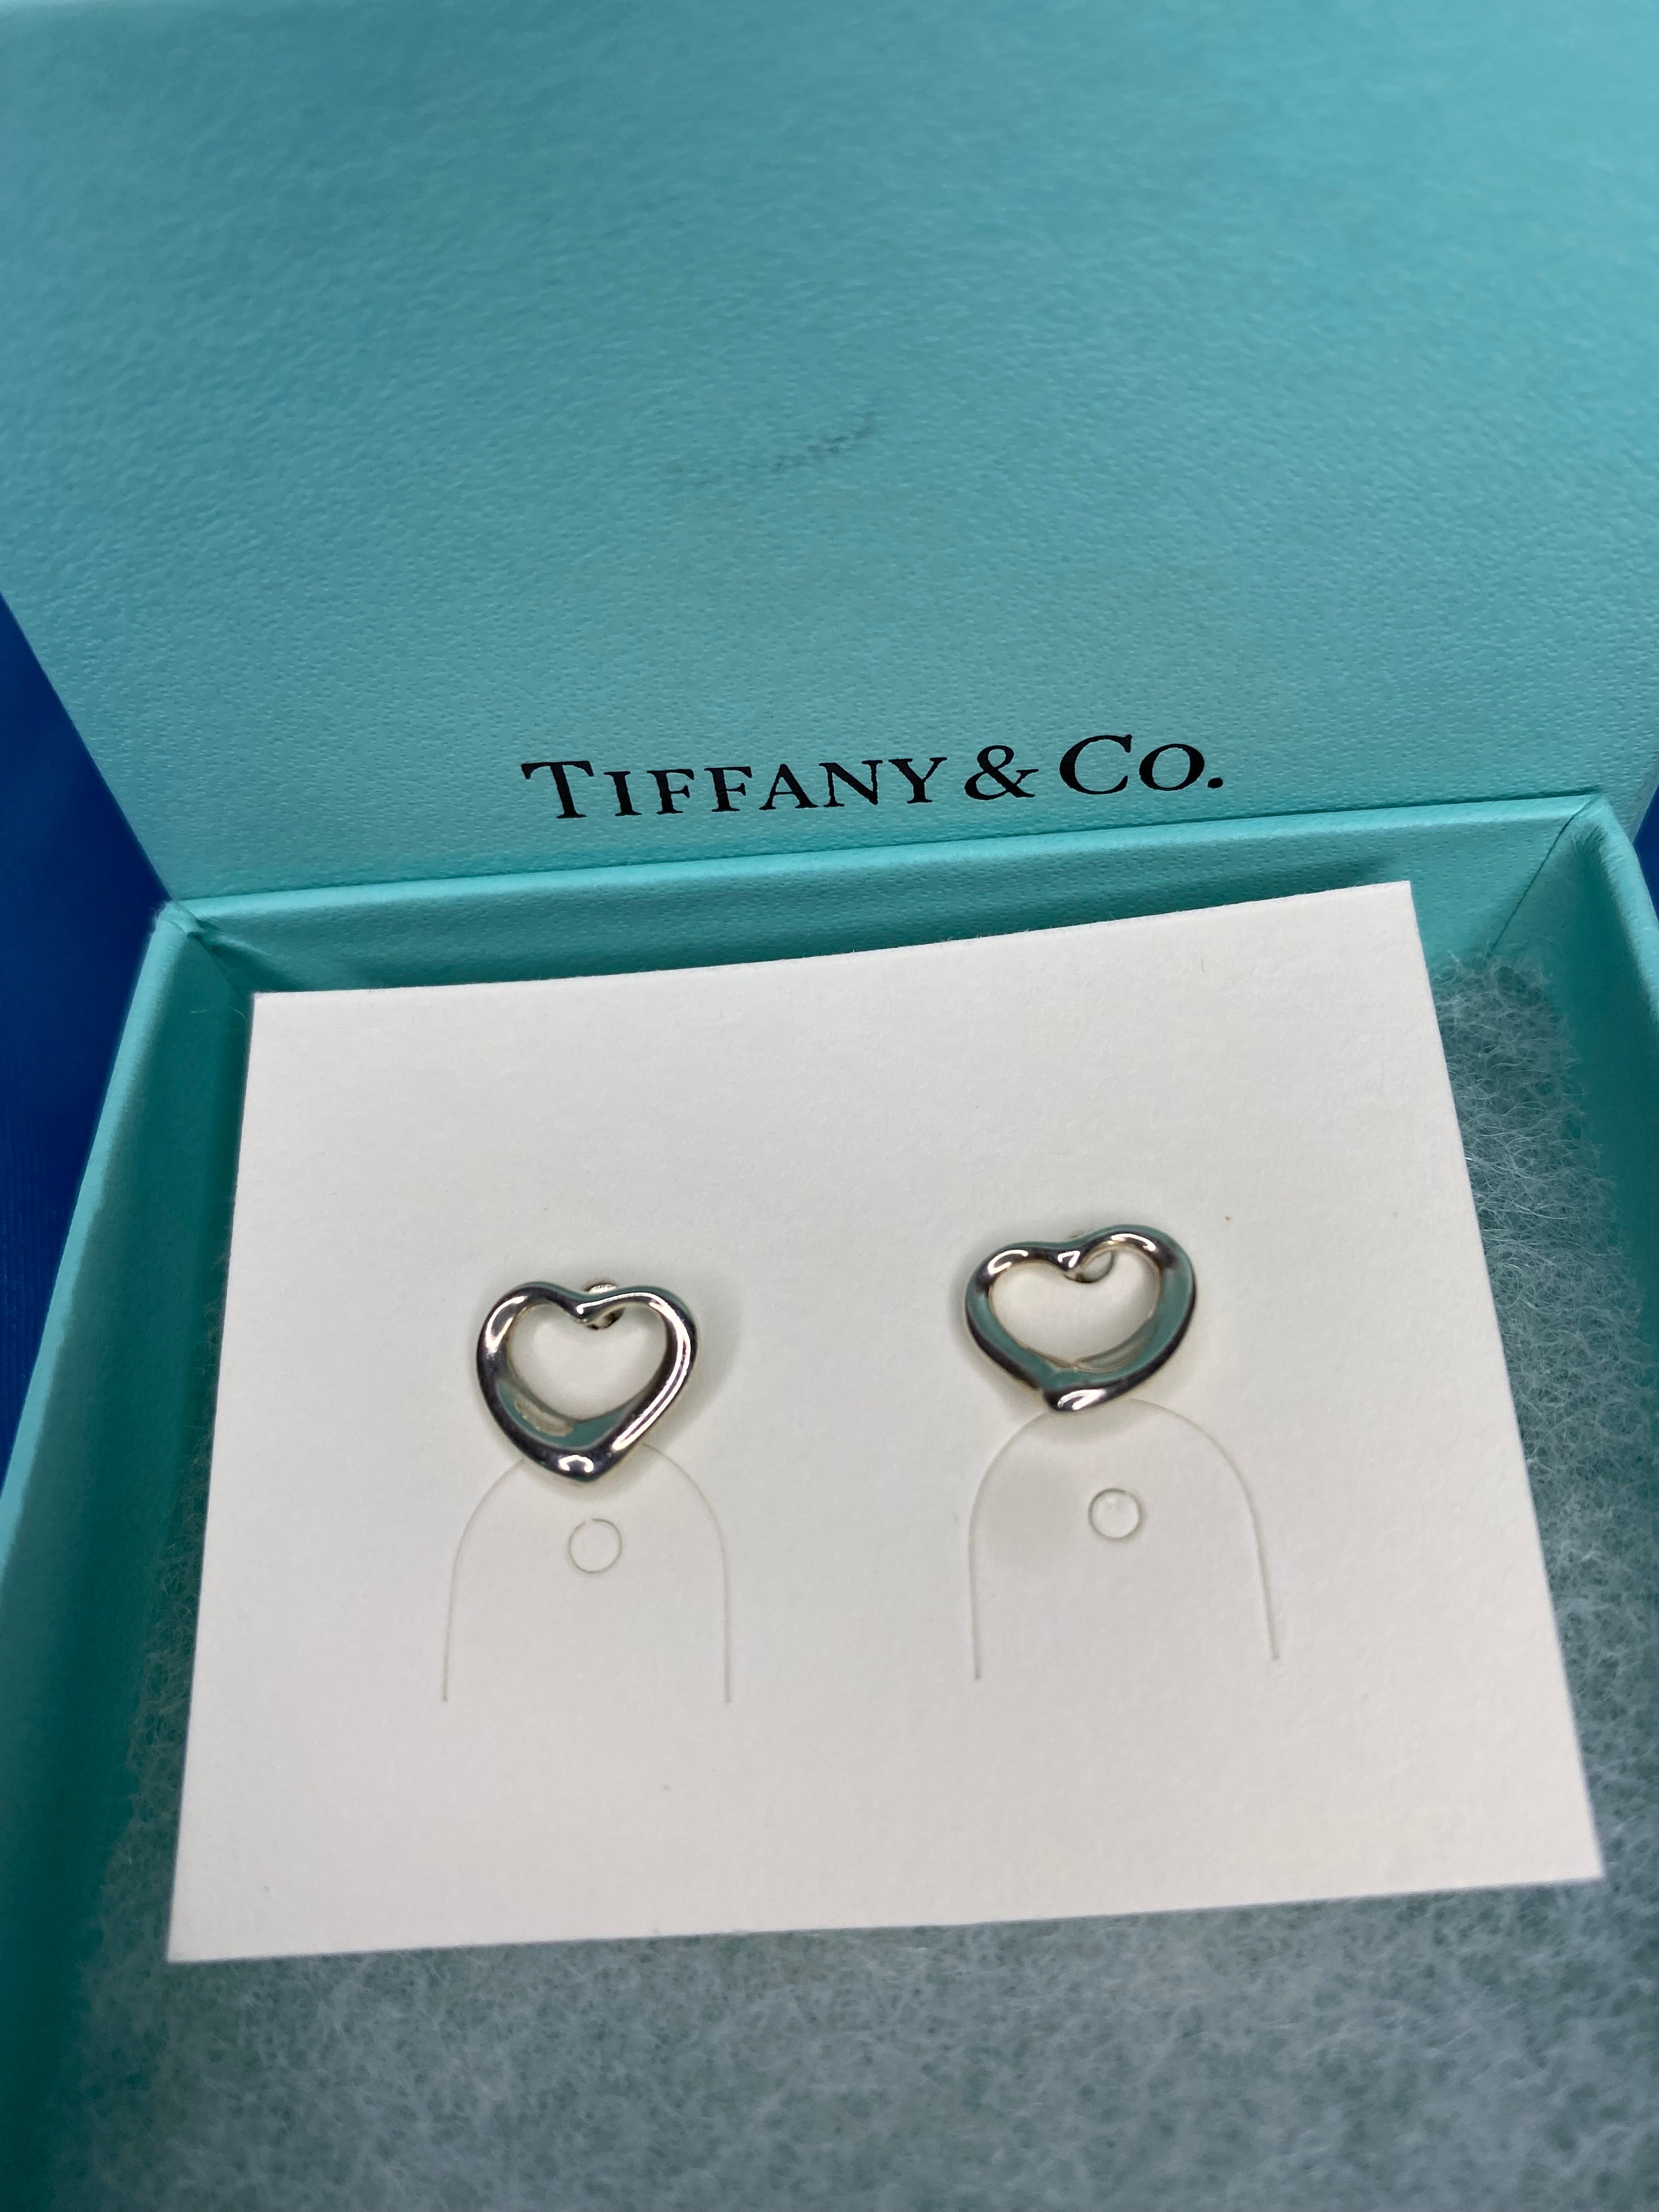 TIFFANY & CO. Elsa Peretti Open Heart Earrings in Sterling Silver